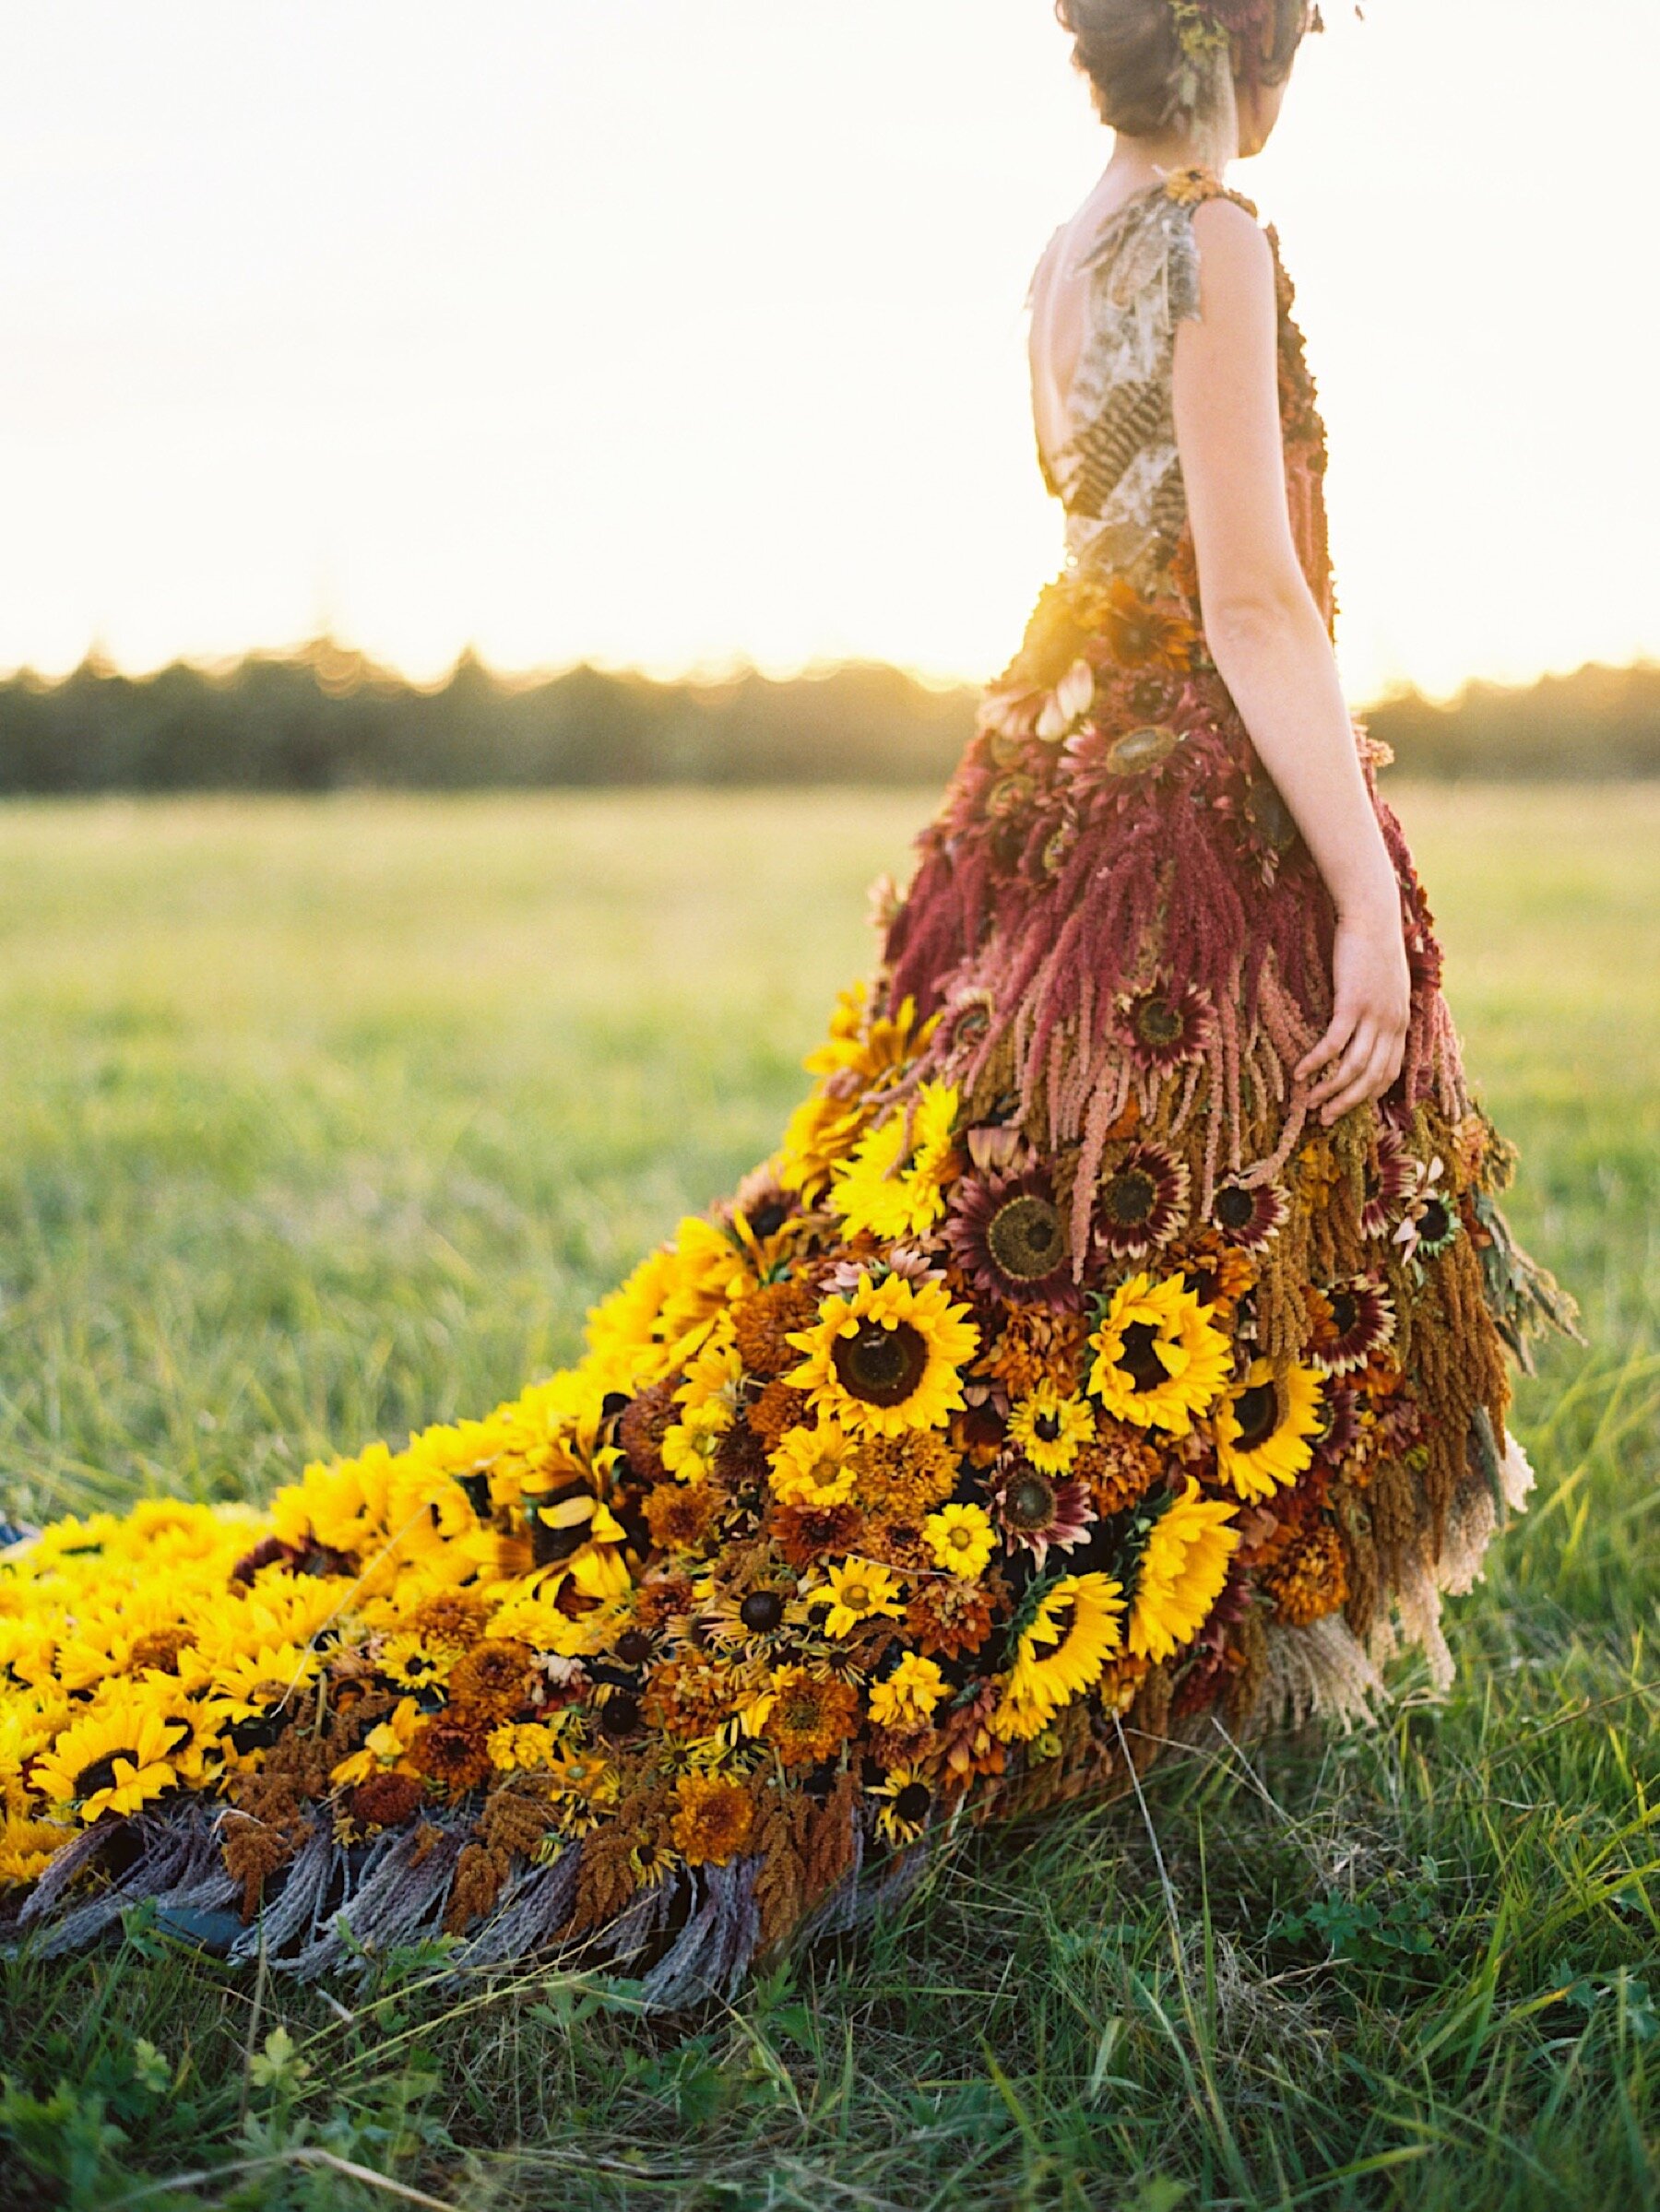 sunflower wedding dress